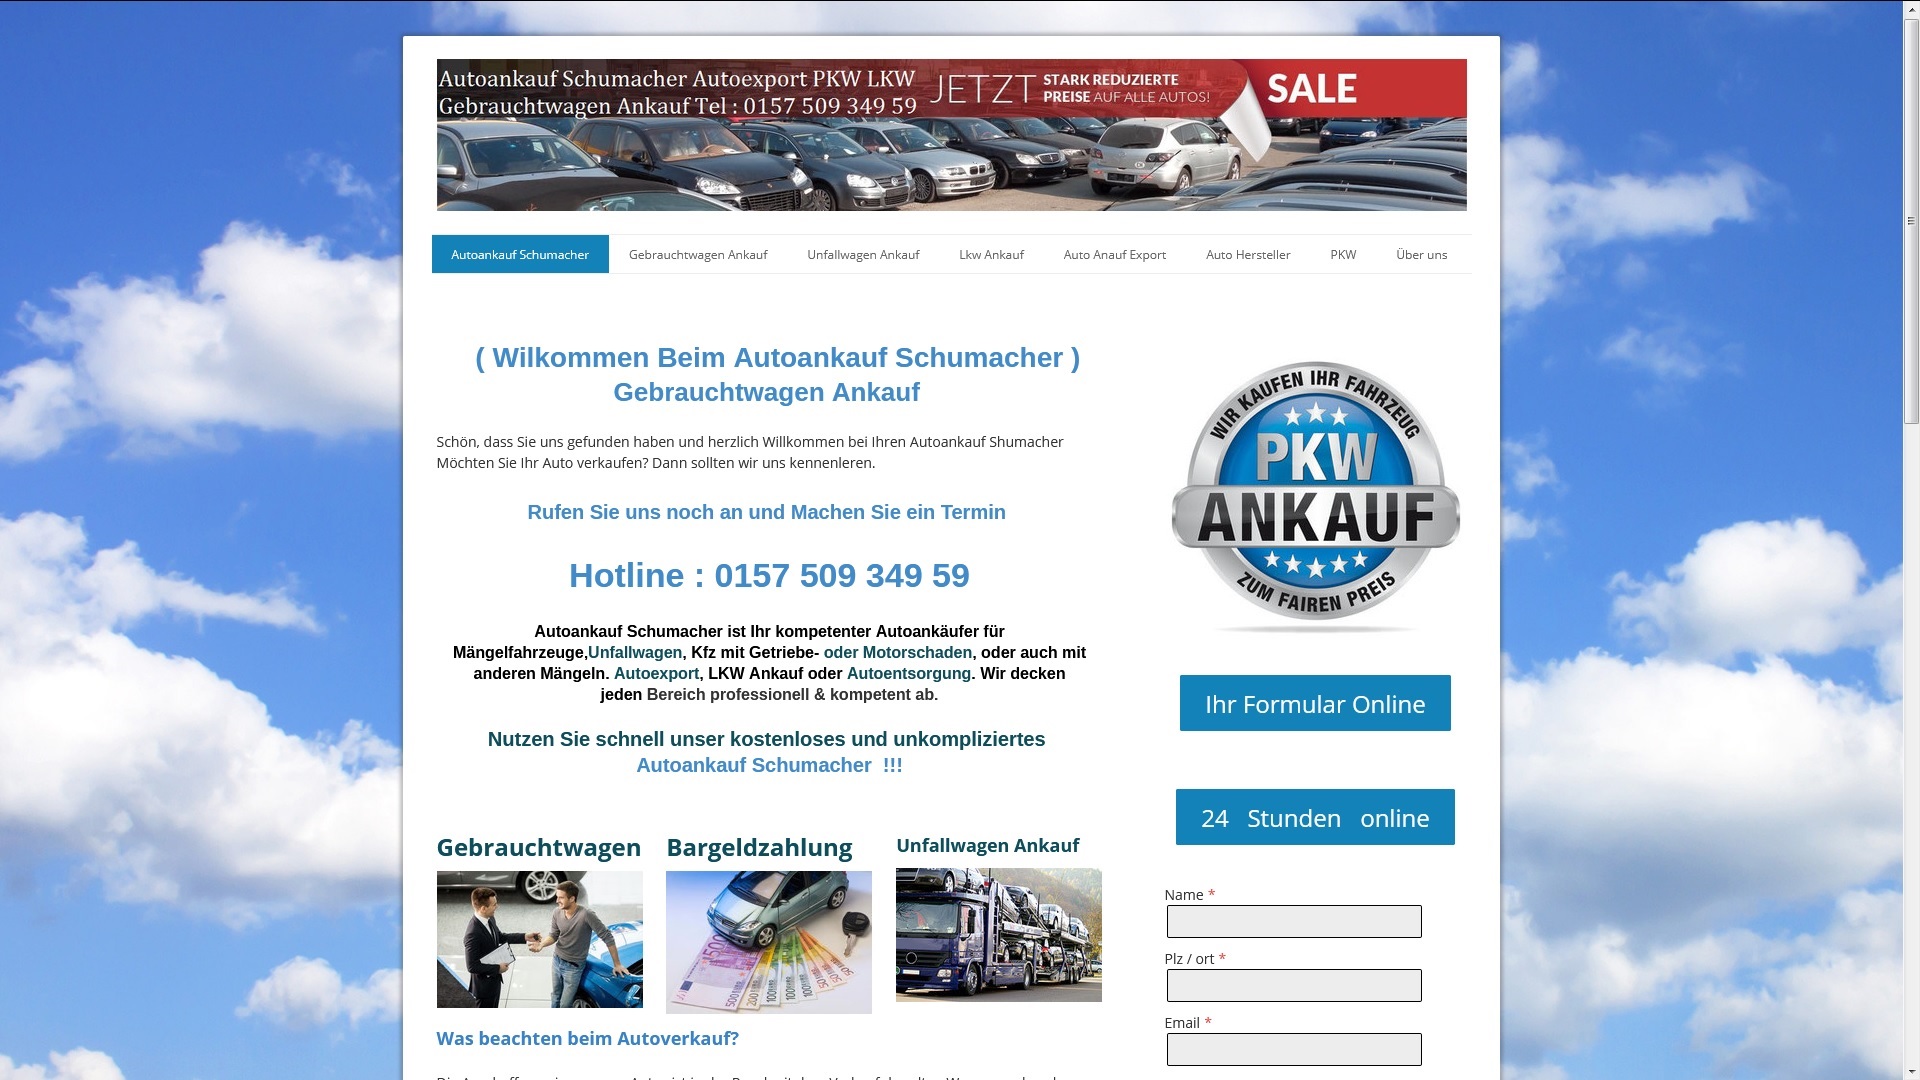 unkomplizierter autoankauf in kassel von autoankauf schumacher de - Unkomplizierter Autoankauf in Kassel | von AutoAnkauf Schumacher.de